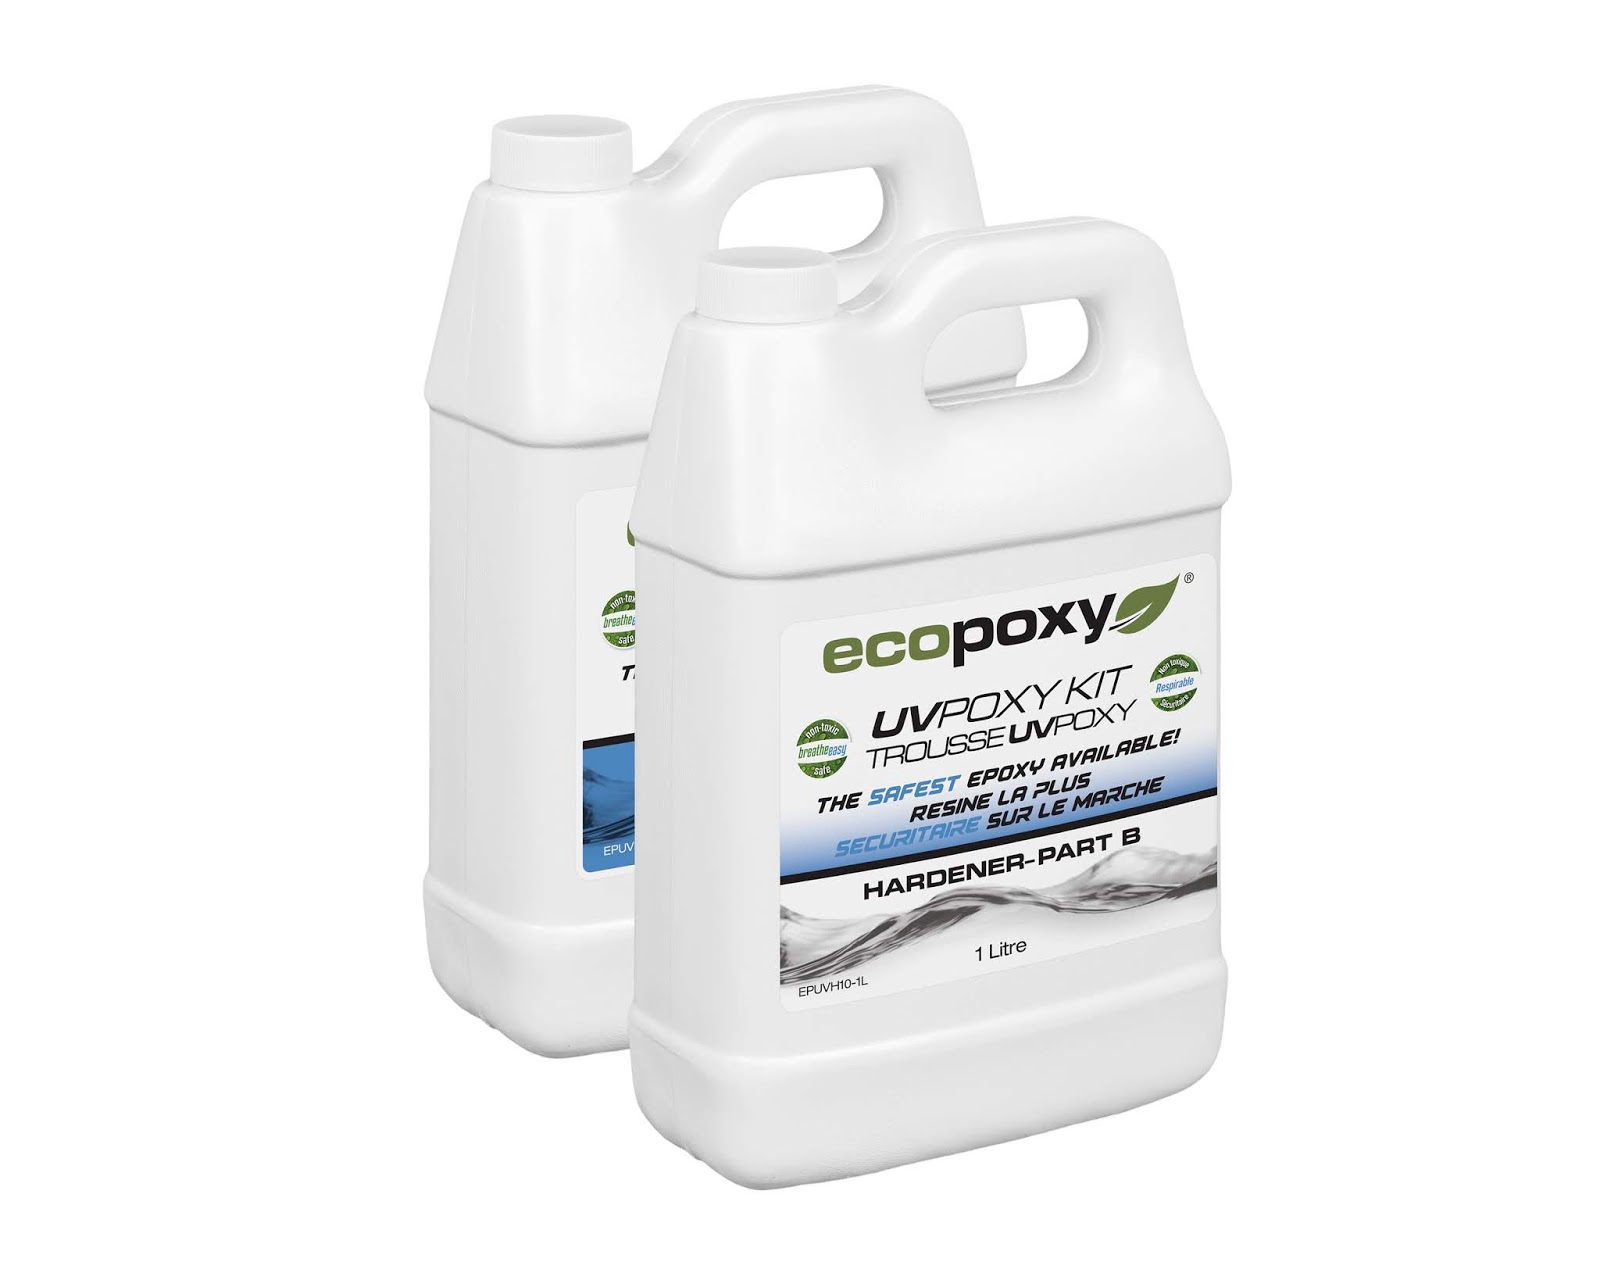 EcoPoxy Color Pigment Kit